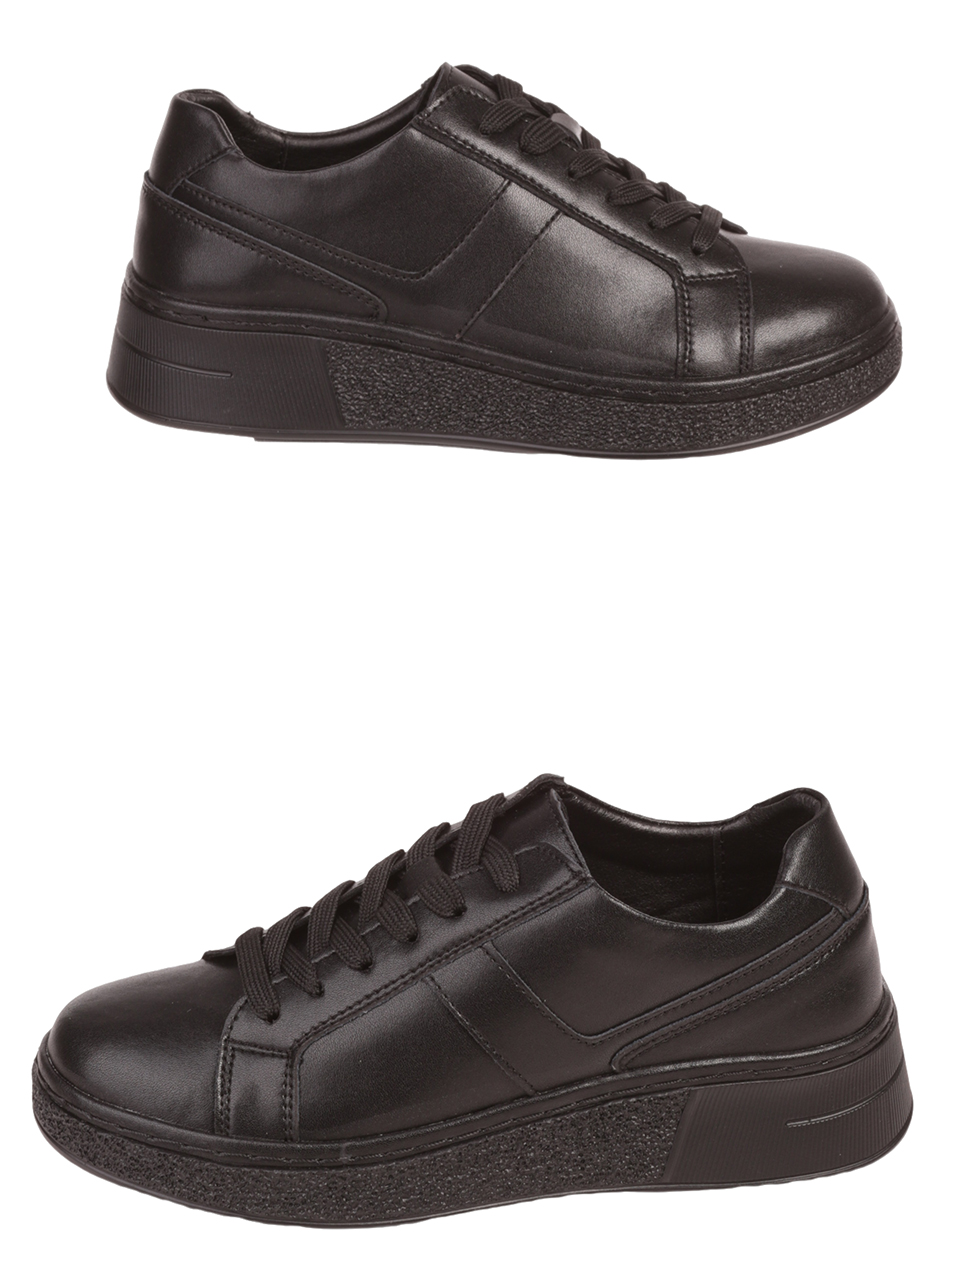 Ежедневни дамски обувки от естествена кожа в черно 3AF-23681 black